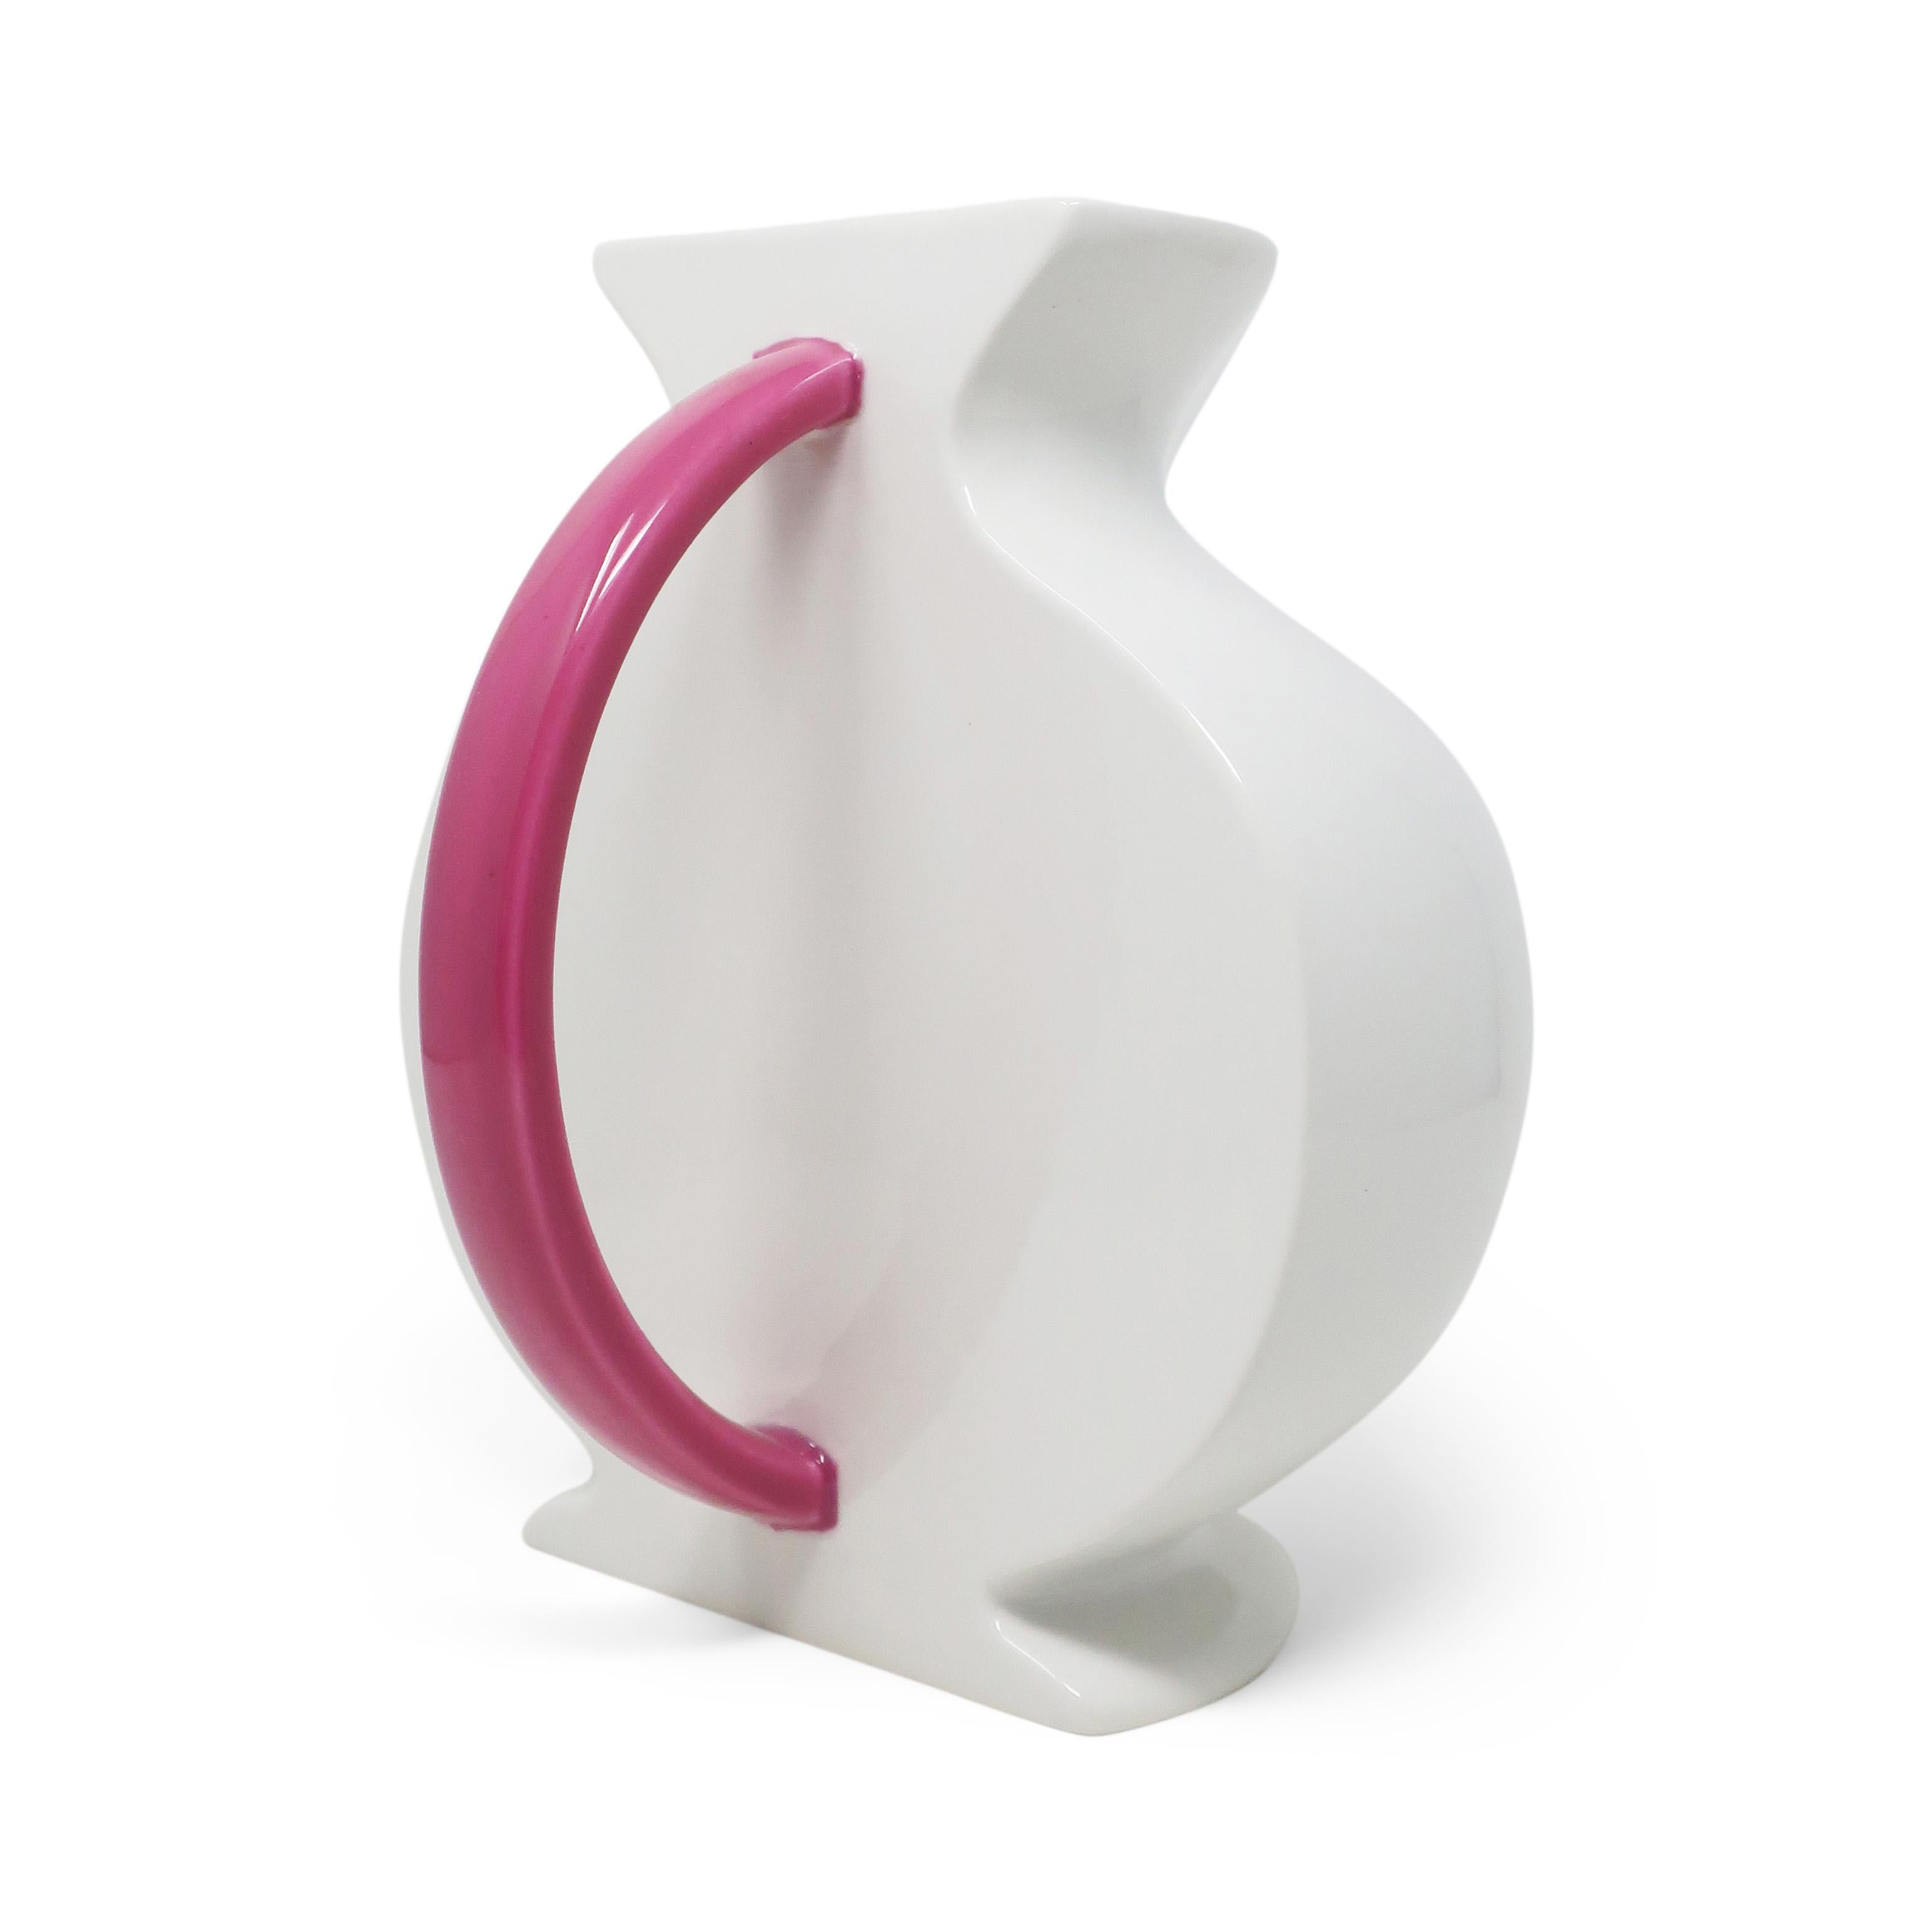 Wunderschöner postmoderner Keramikkrug aus der Kollektion Hollywood, entworfen von Marco Zanini für Flavia Montelupo/Bitossi. Der weiße Korpus, der abgerundete rosafarbene Griff und die flache Rückenlehne zeigen einen deutlichen Einfluss der